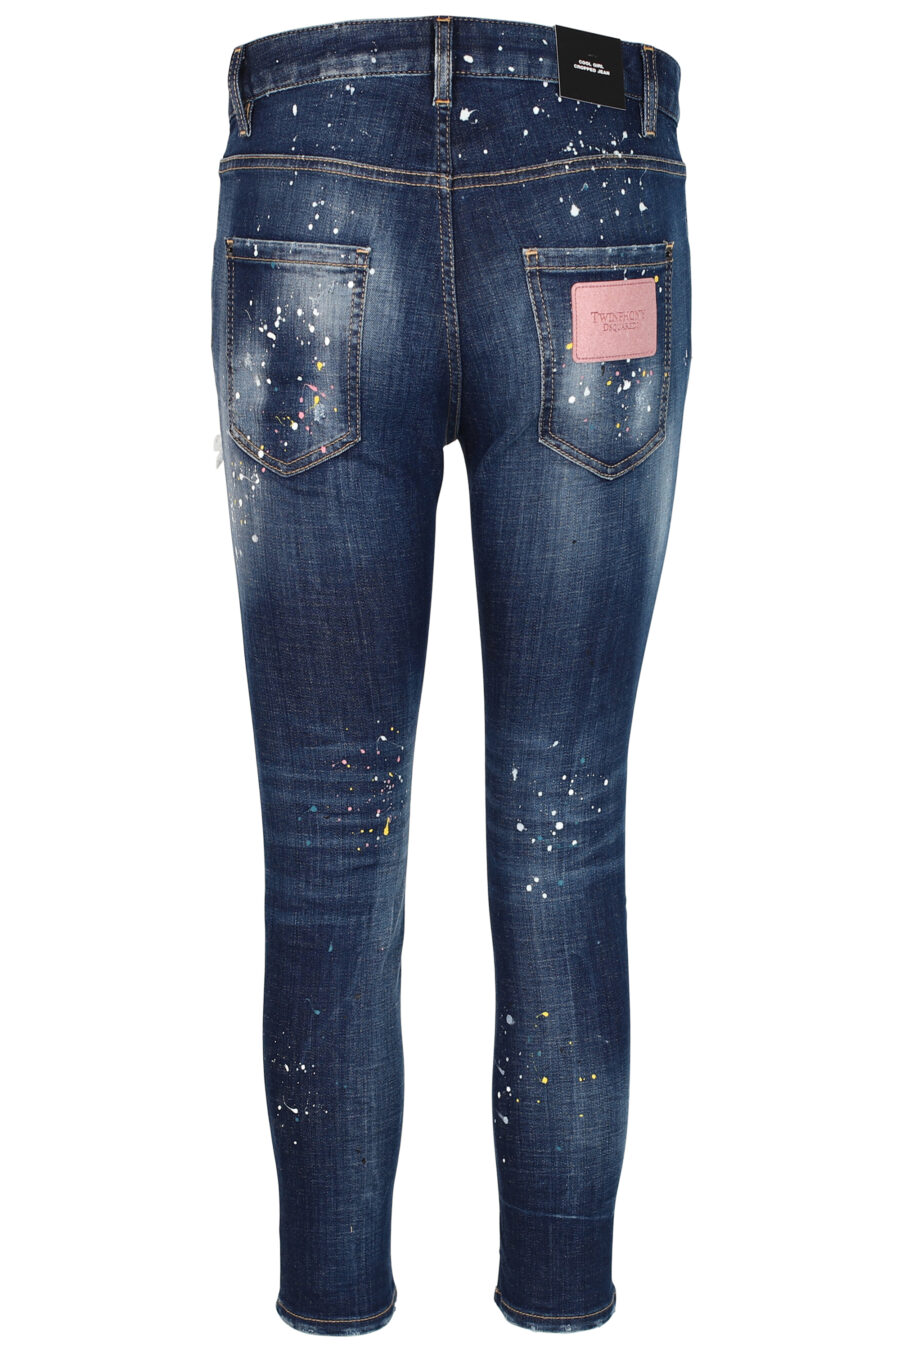 Cool girl cropped jeans "Cool girl cropped jean" blau ausgefranst mit Rissen - 8052134942512 3